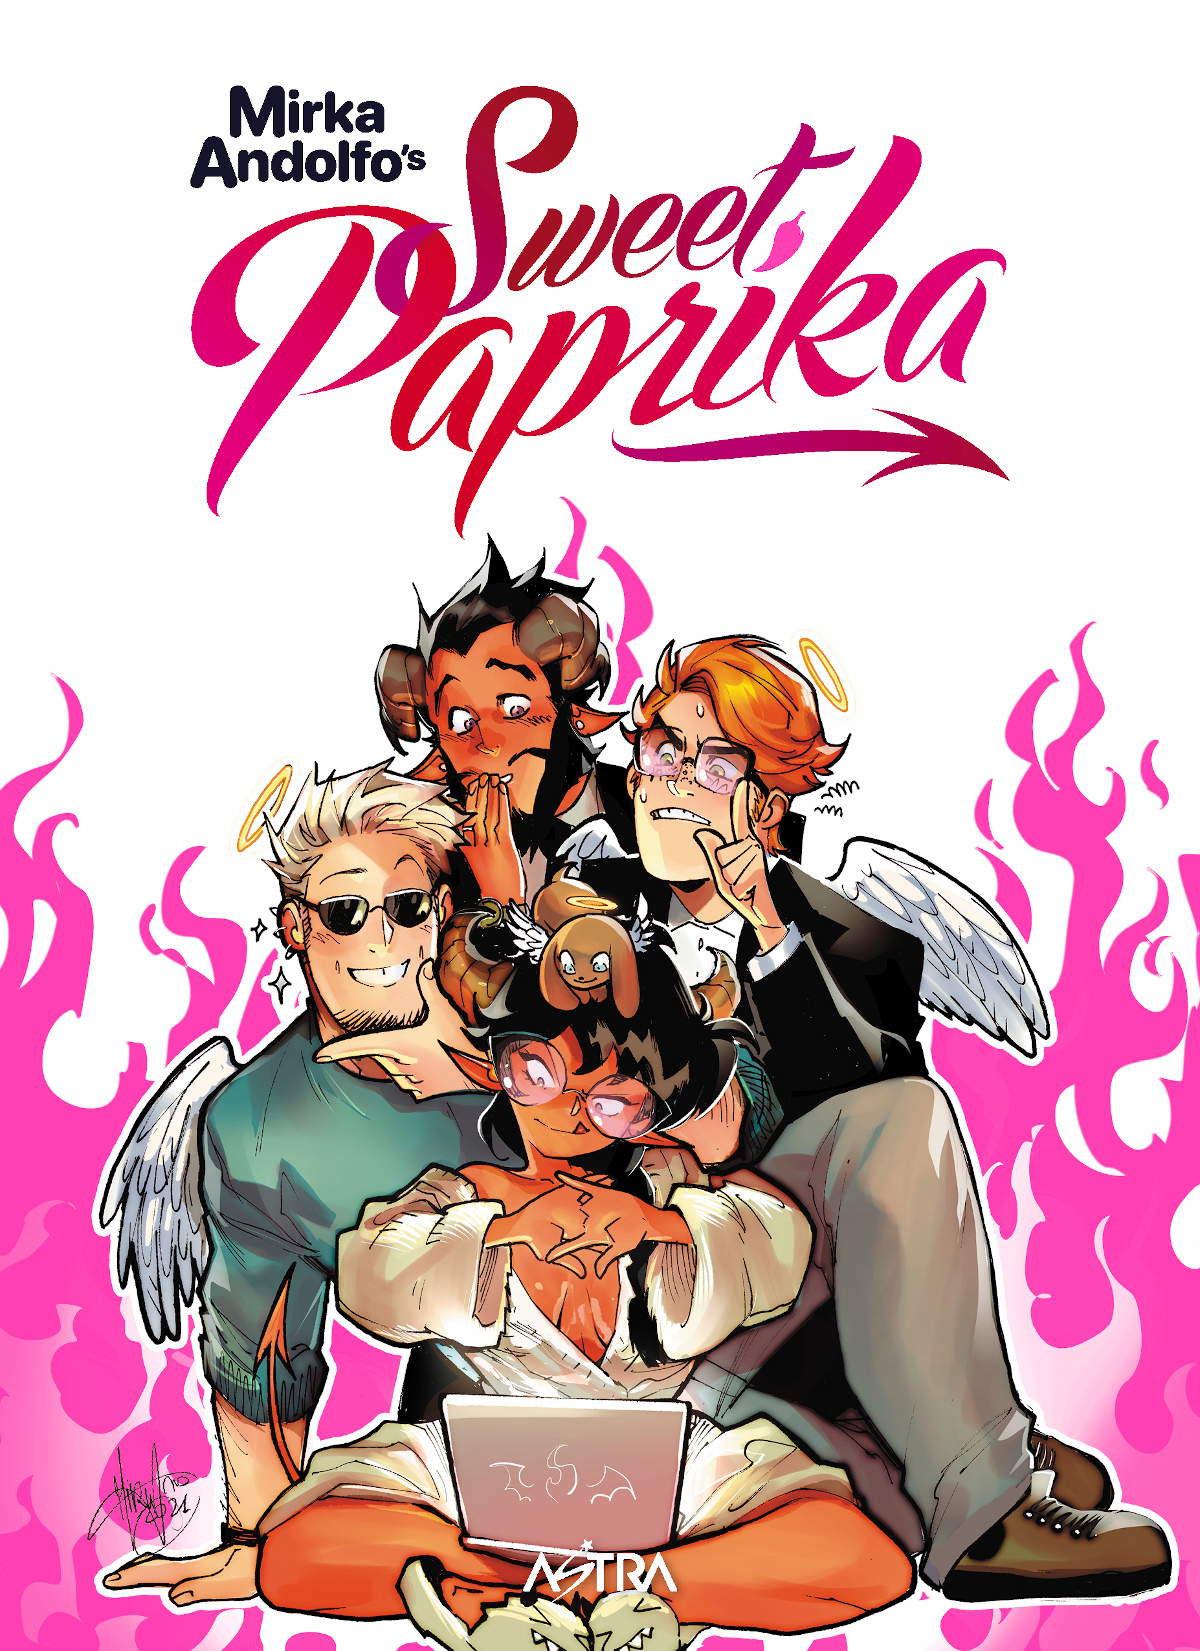 sweet paprika star comics mirka andolfo